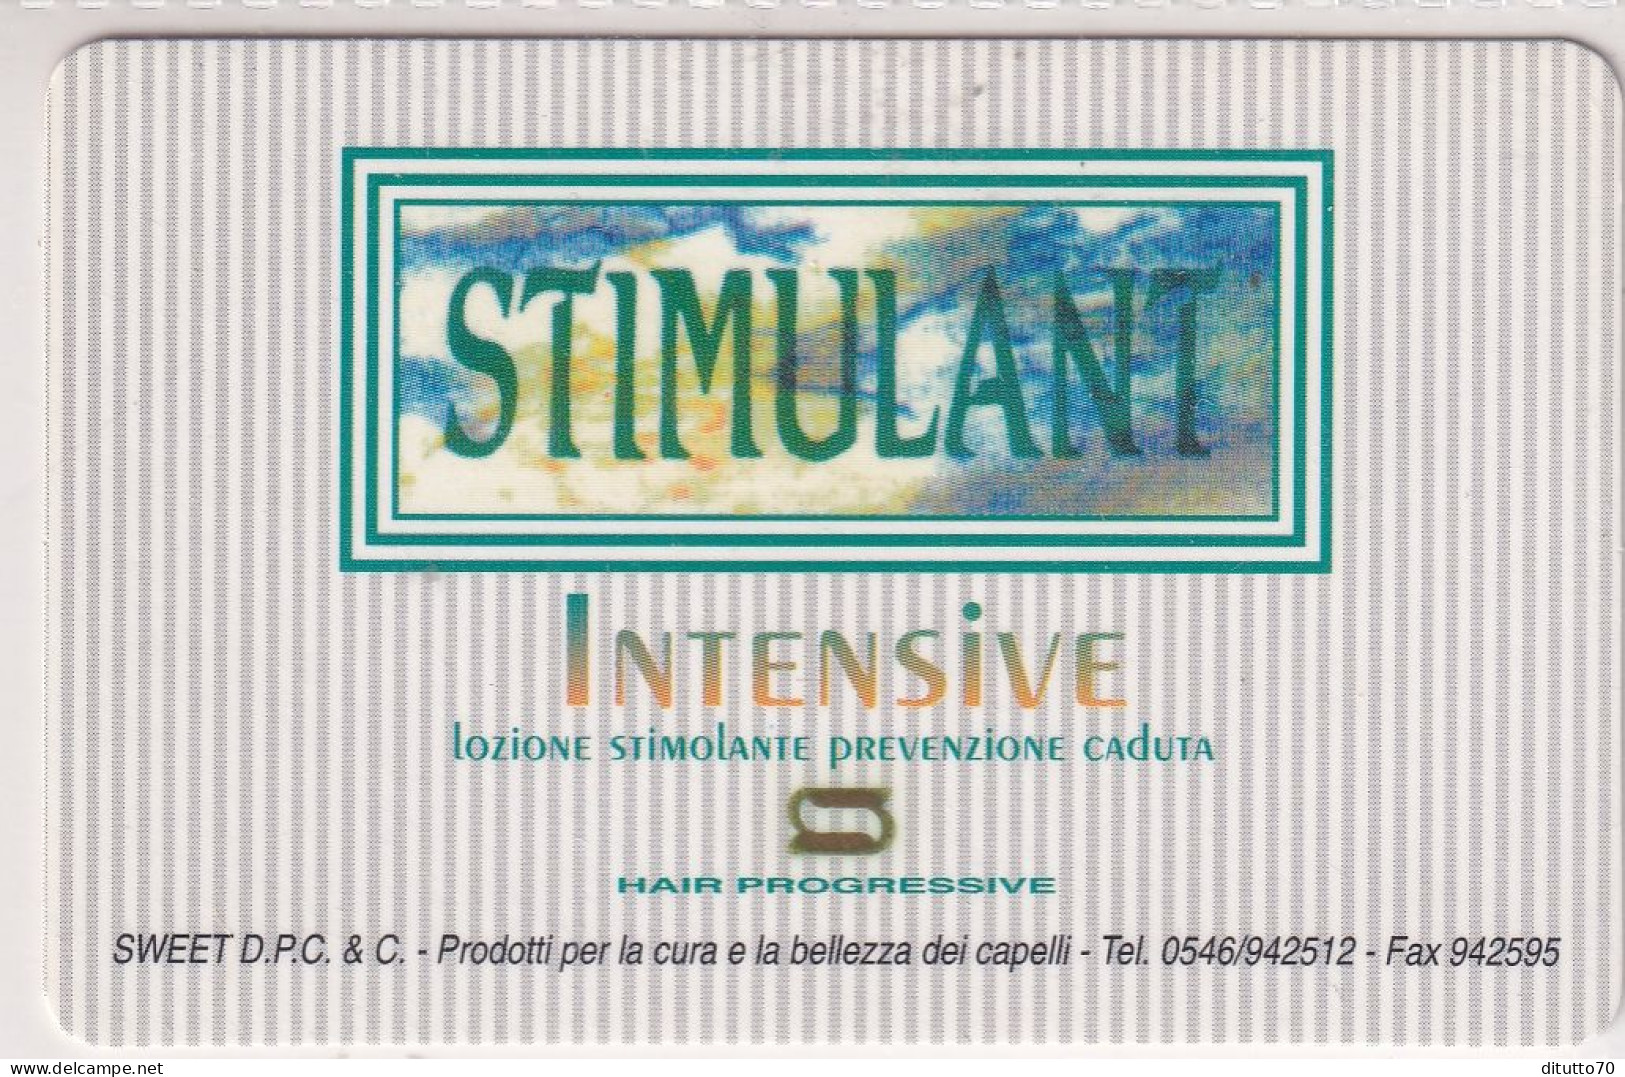 Calendarietto - Stimulant - Intensive - Anno 1998 - Klein Formaat: 1991-00